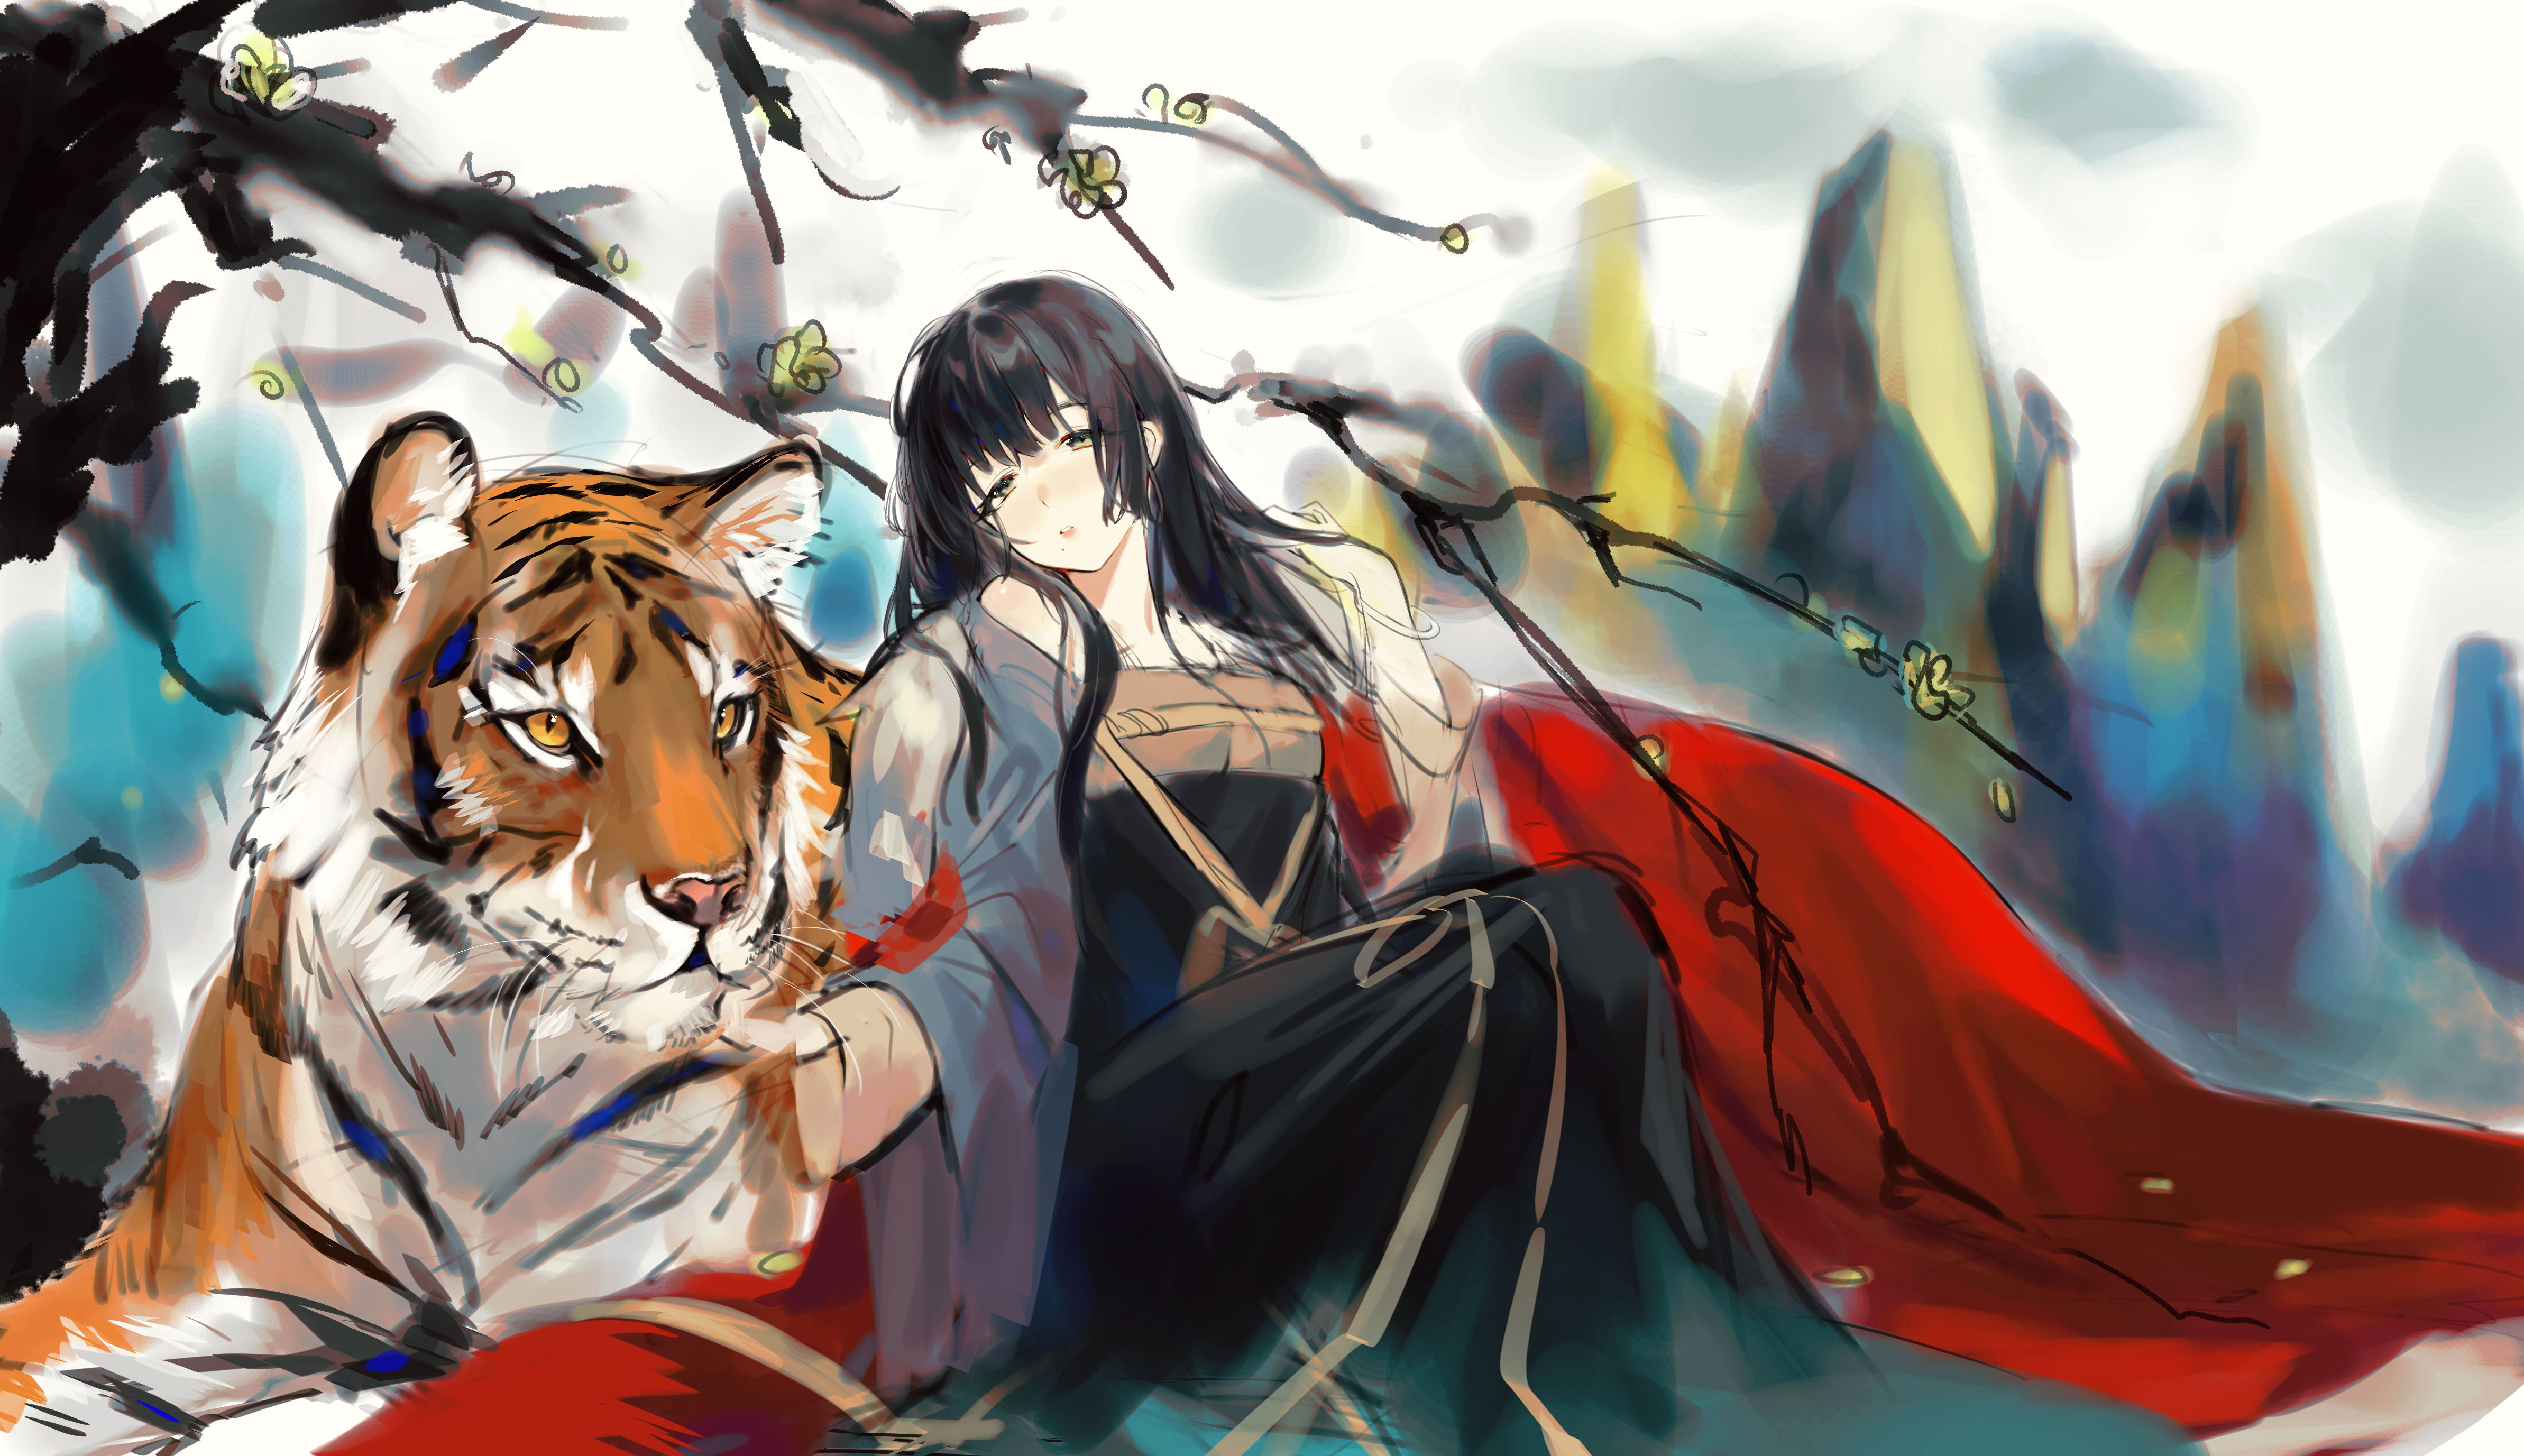 Anime 4773x2754 anime anime girls IIIroha original characters doodle tiger simple background